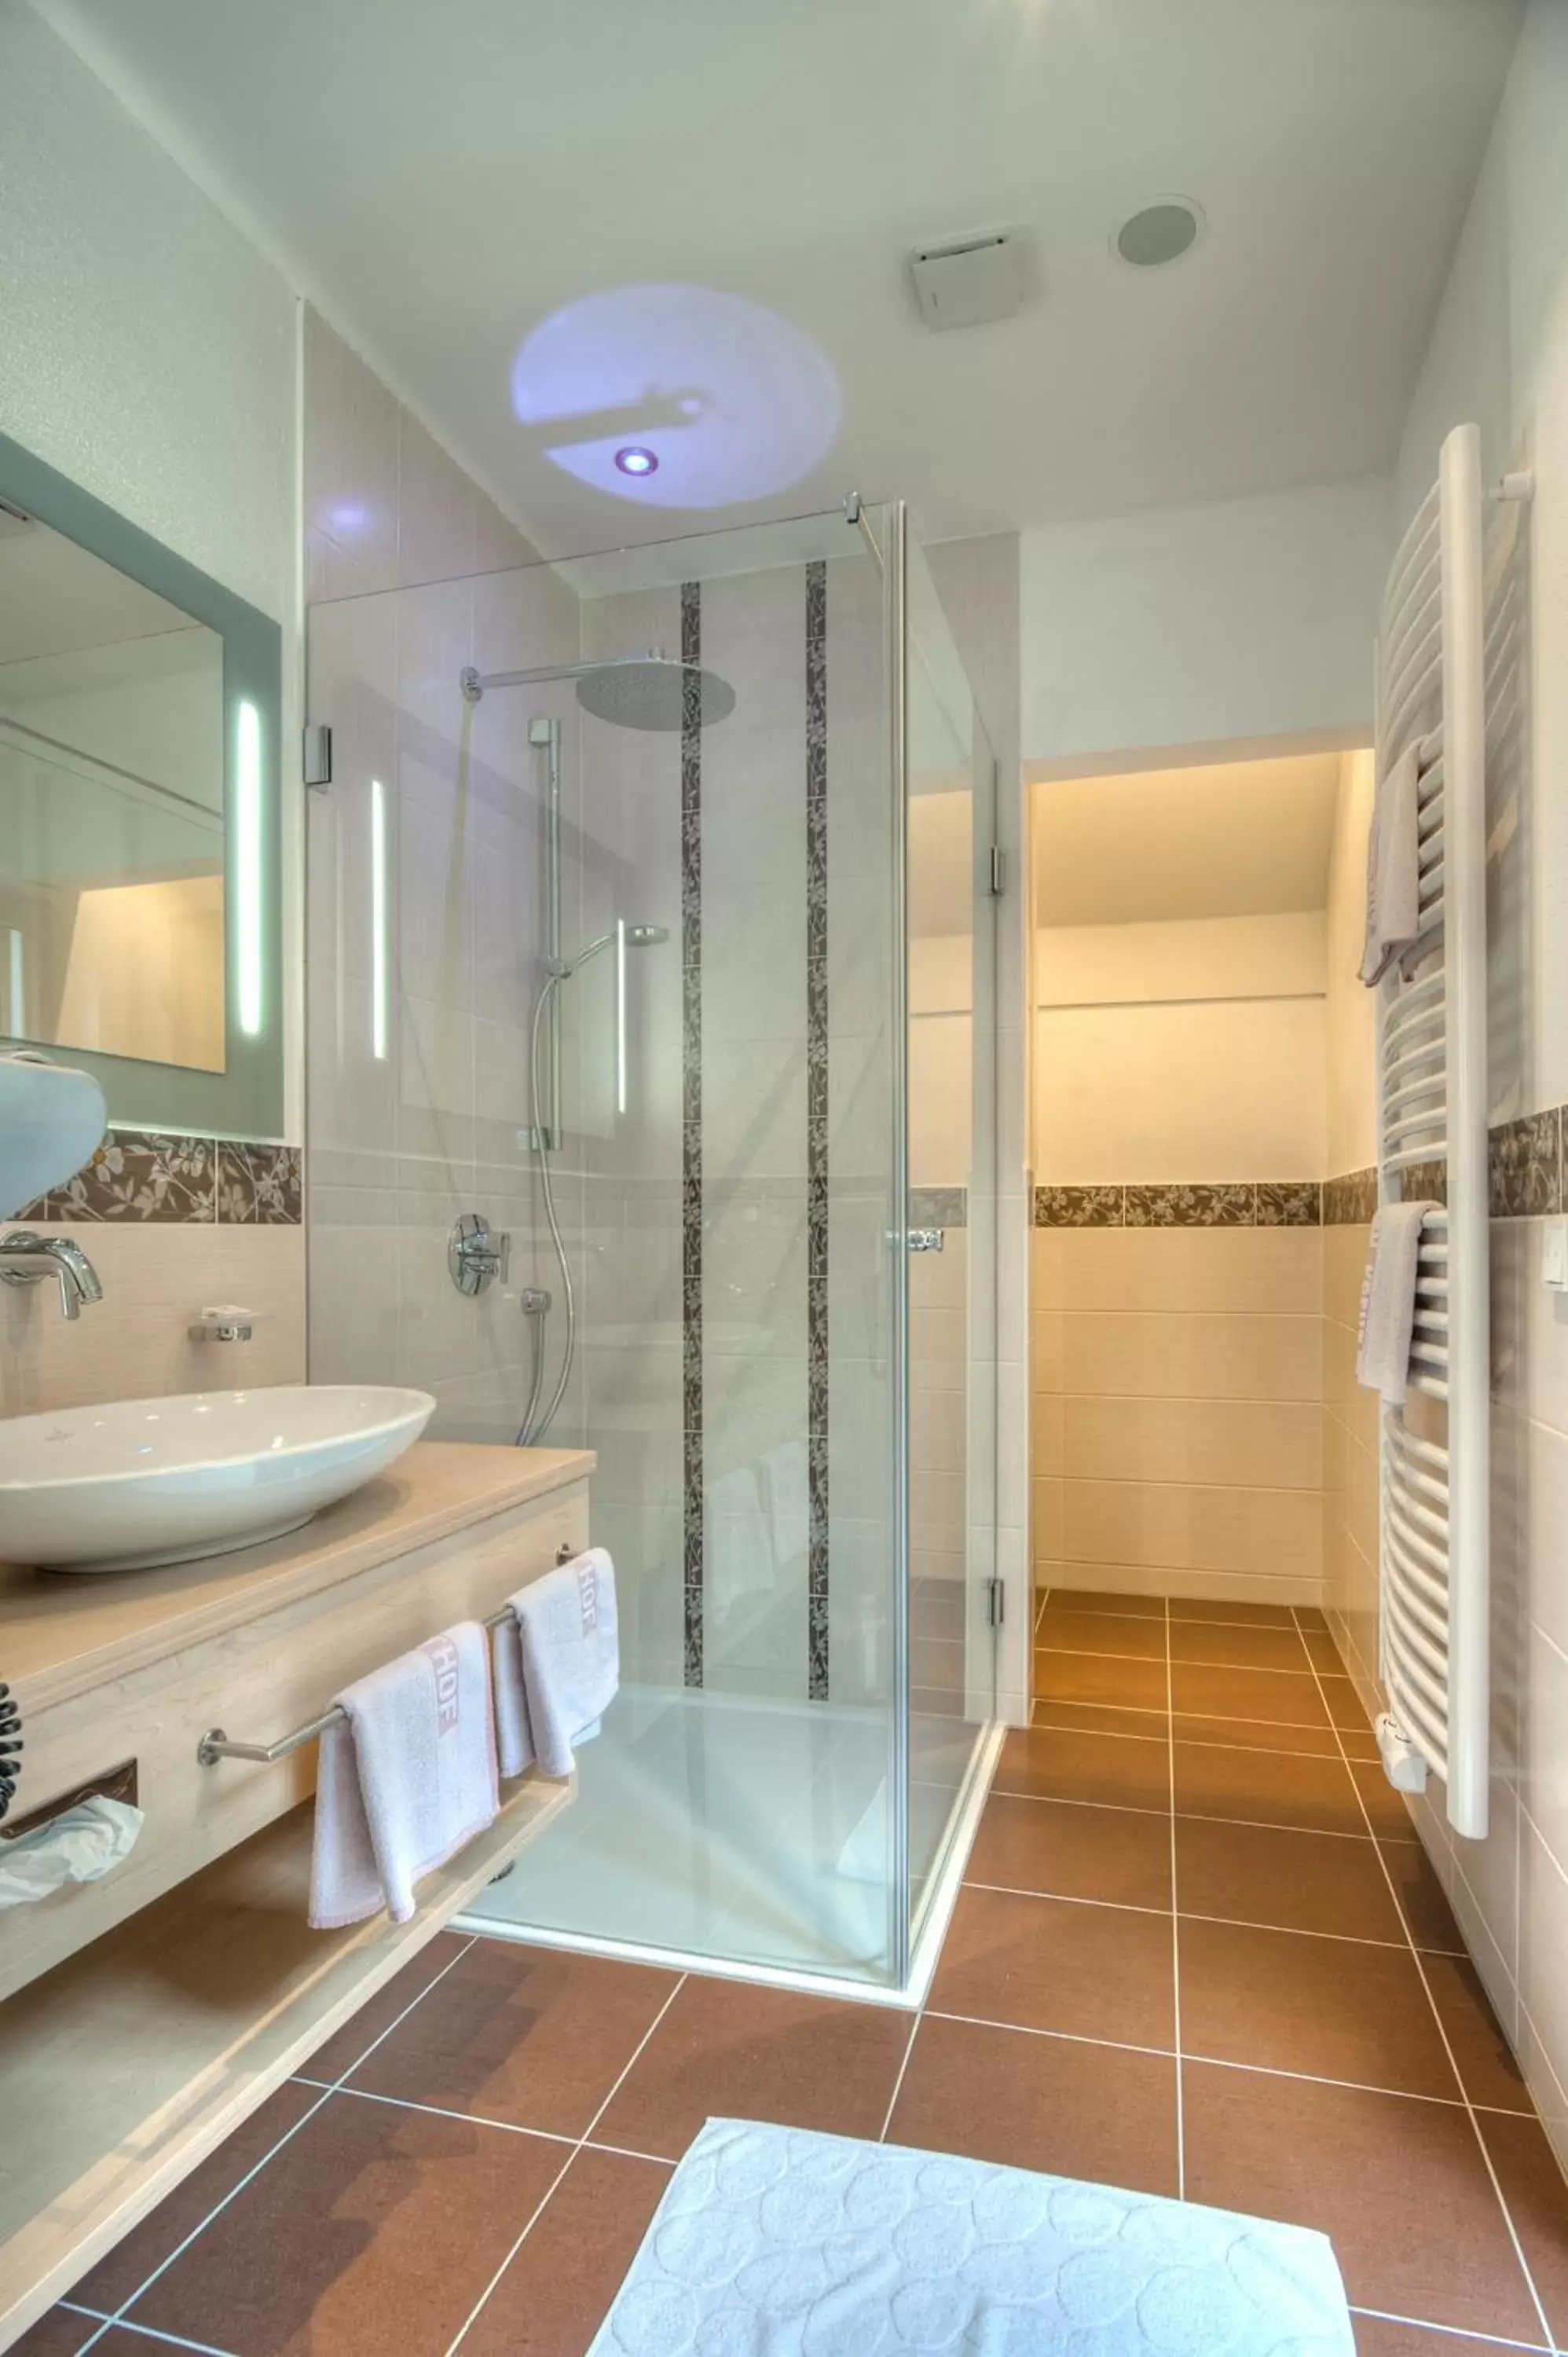 Photo of the whole room, Bathroom in Landhotel Zum Goldenen Kreuz